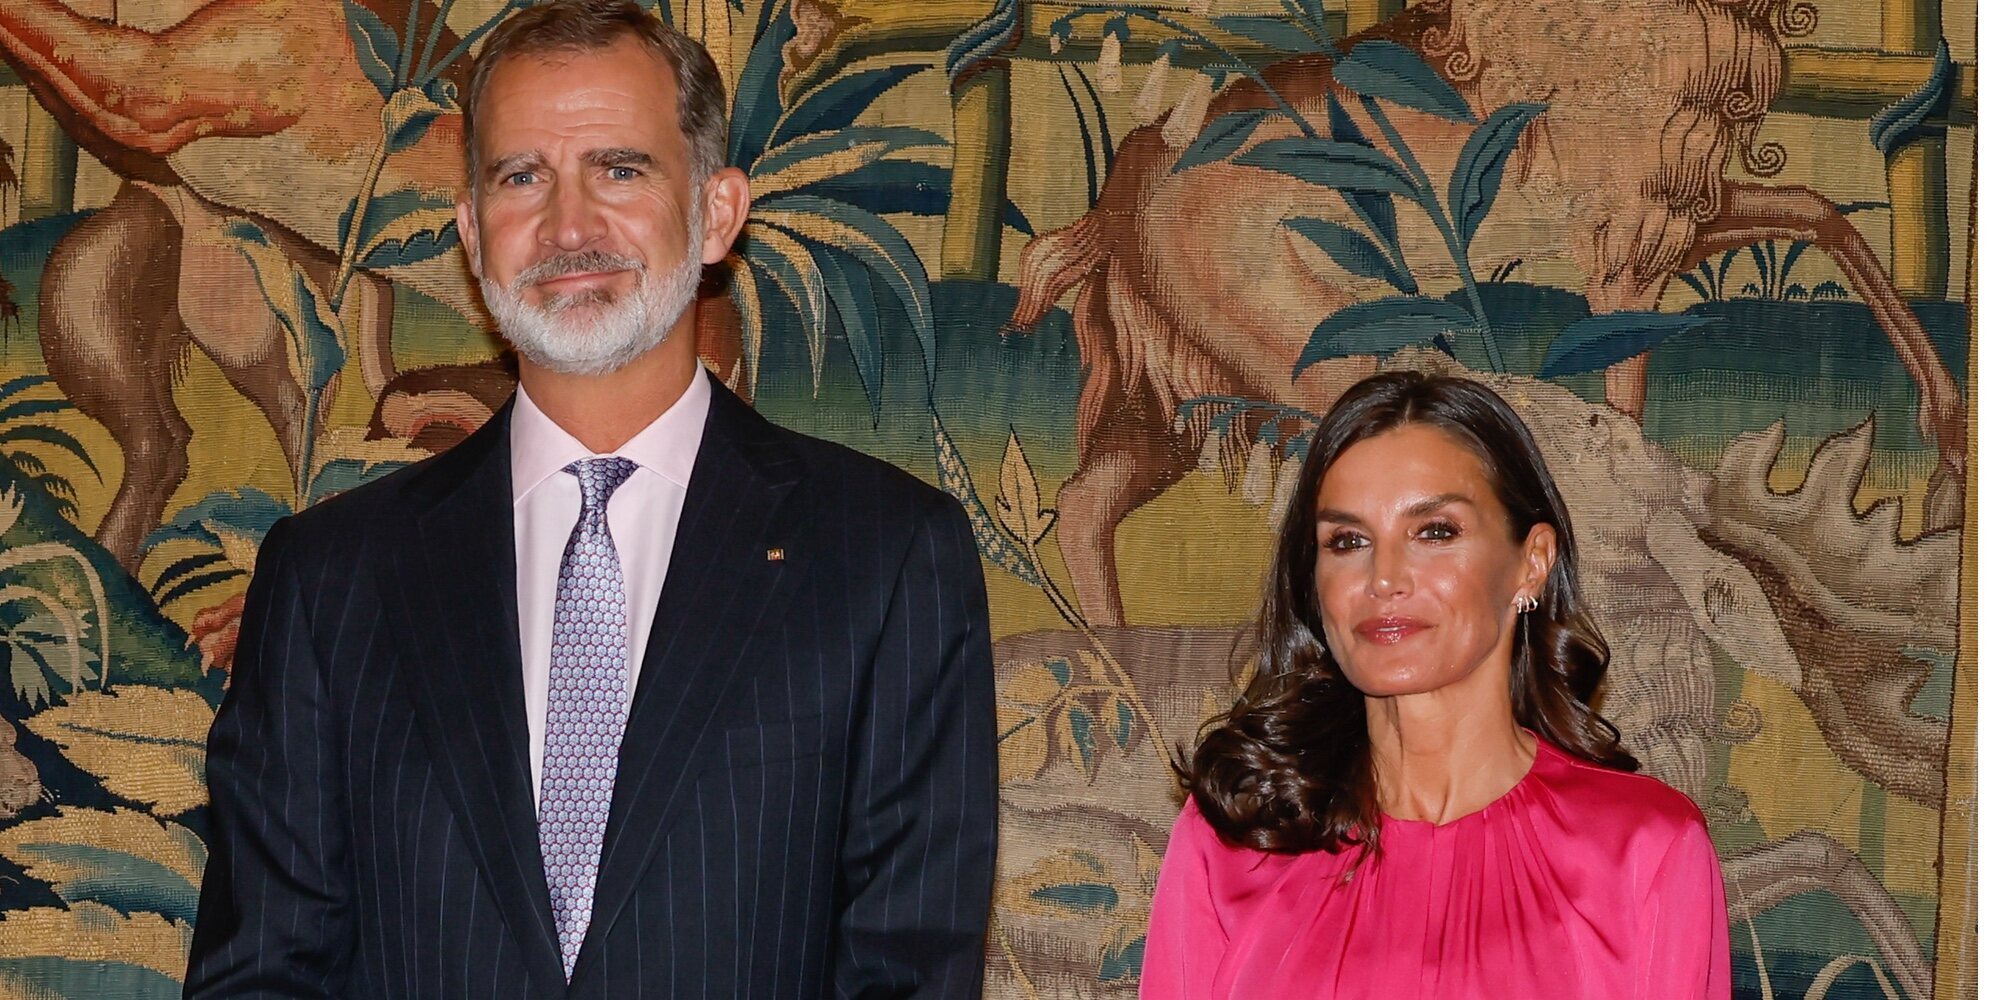 Los Reyes Felipe y Letizia comienzan su visita de Estado a Alemania: discurso inspirador, zapato plano y buena sintonía